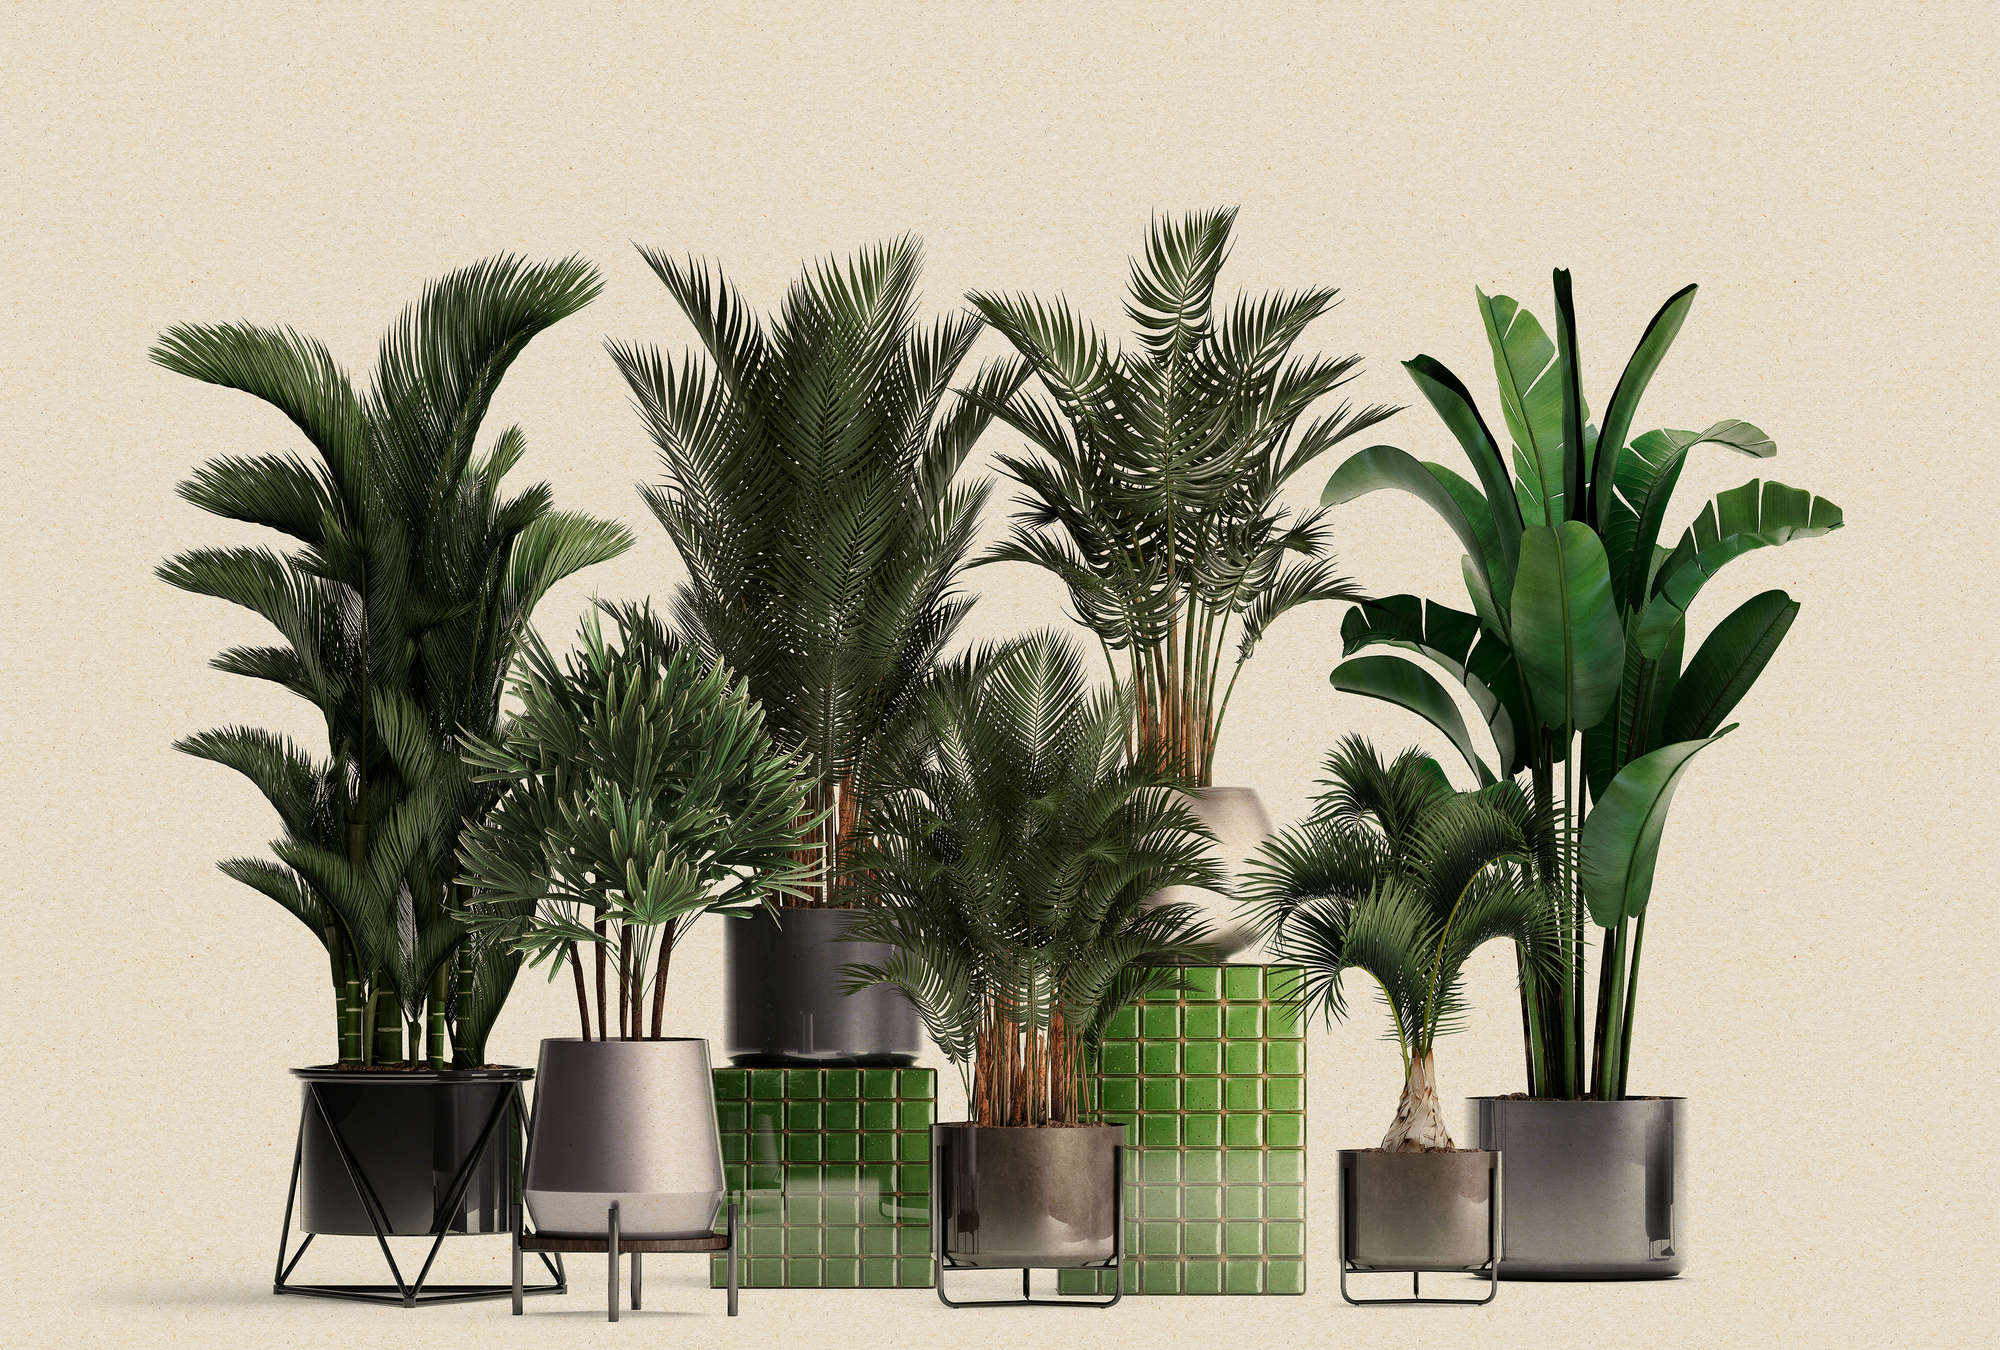             Plant Shop 1 - nature photo wallpaper potted plants palms
        